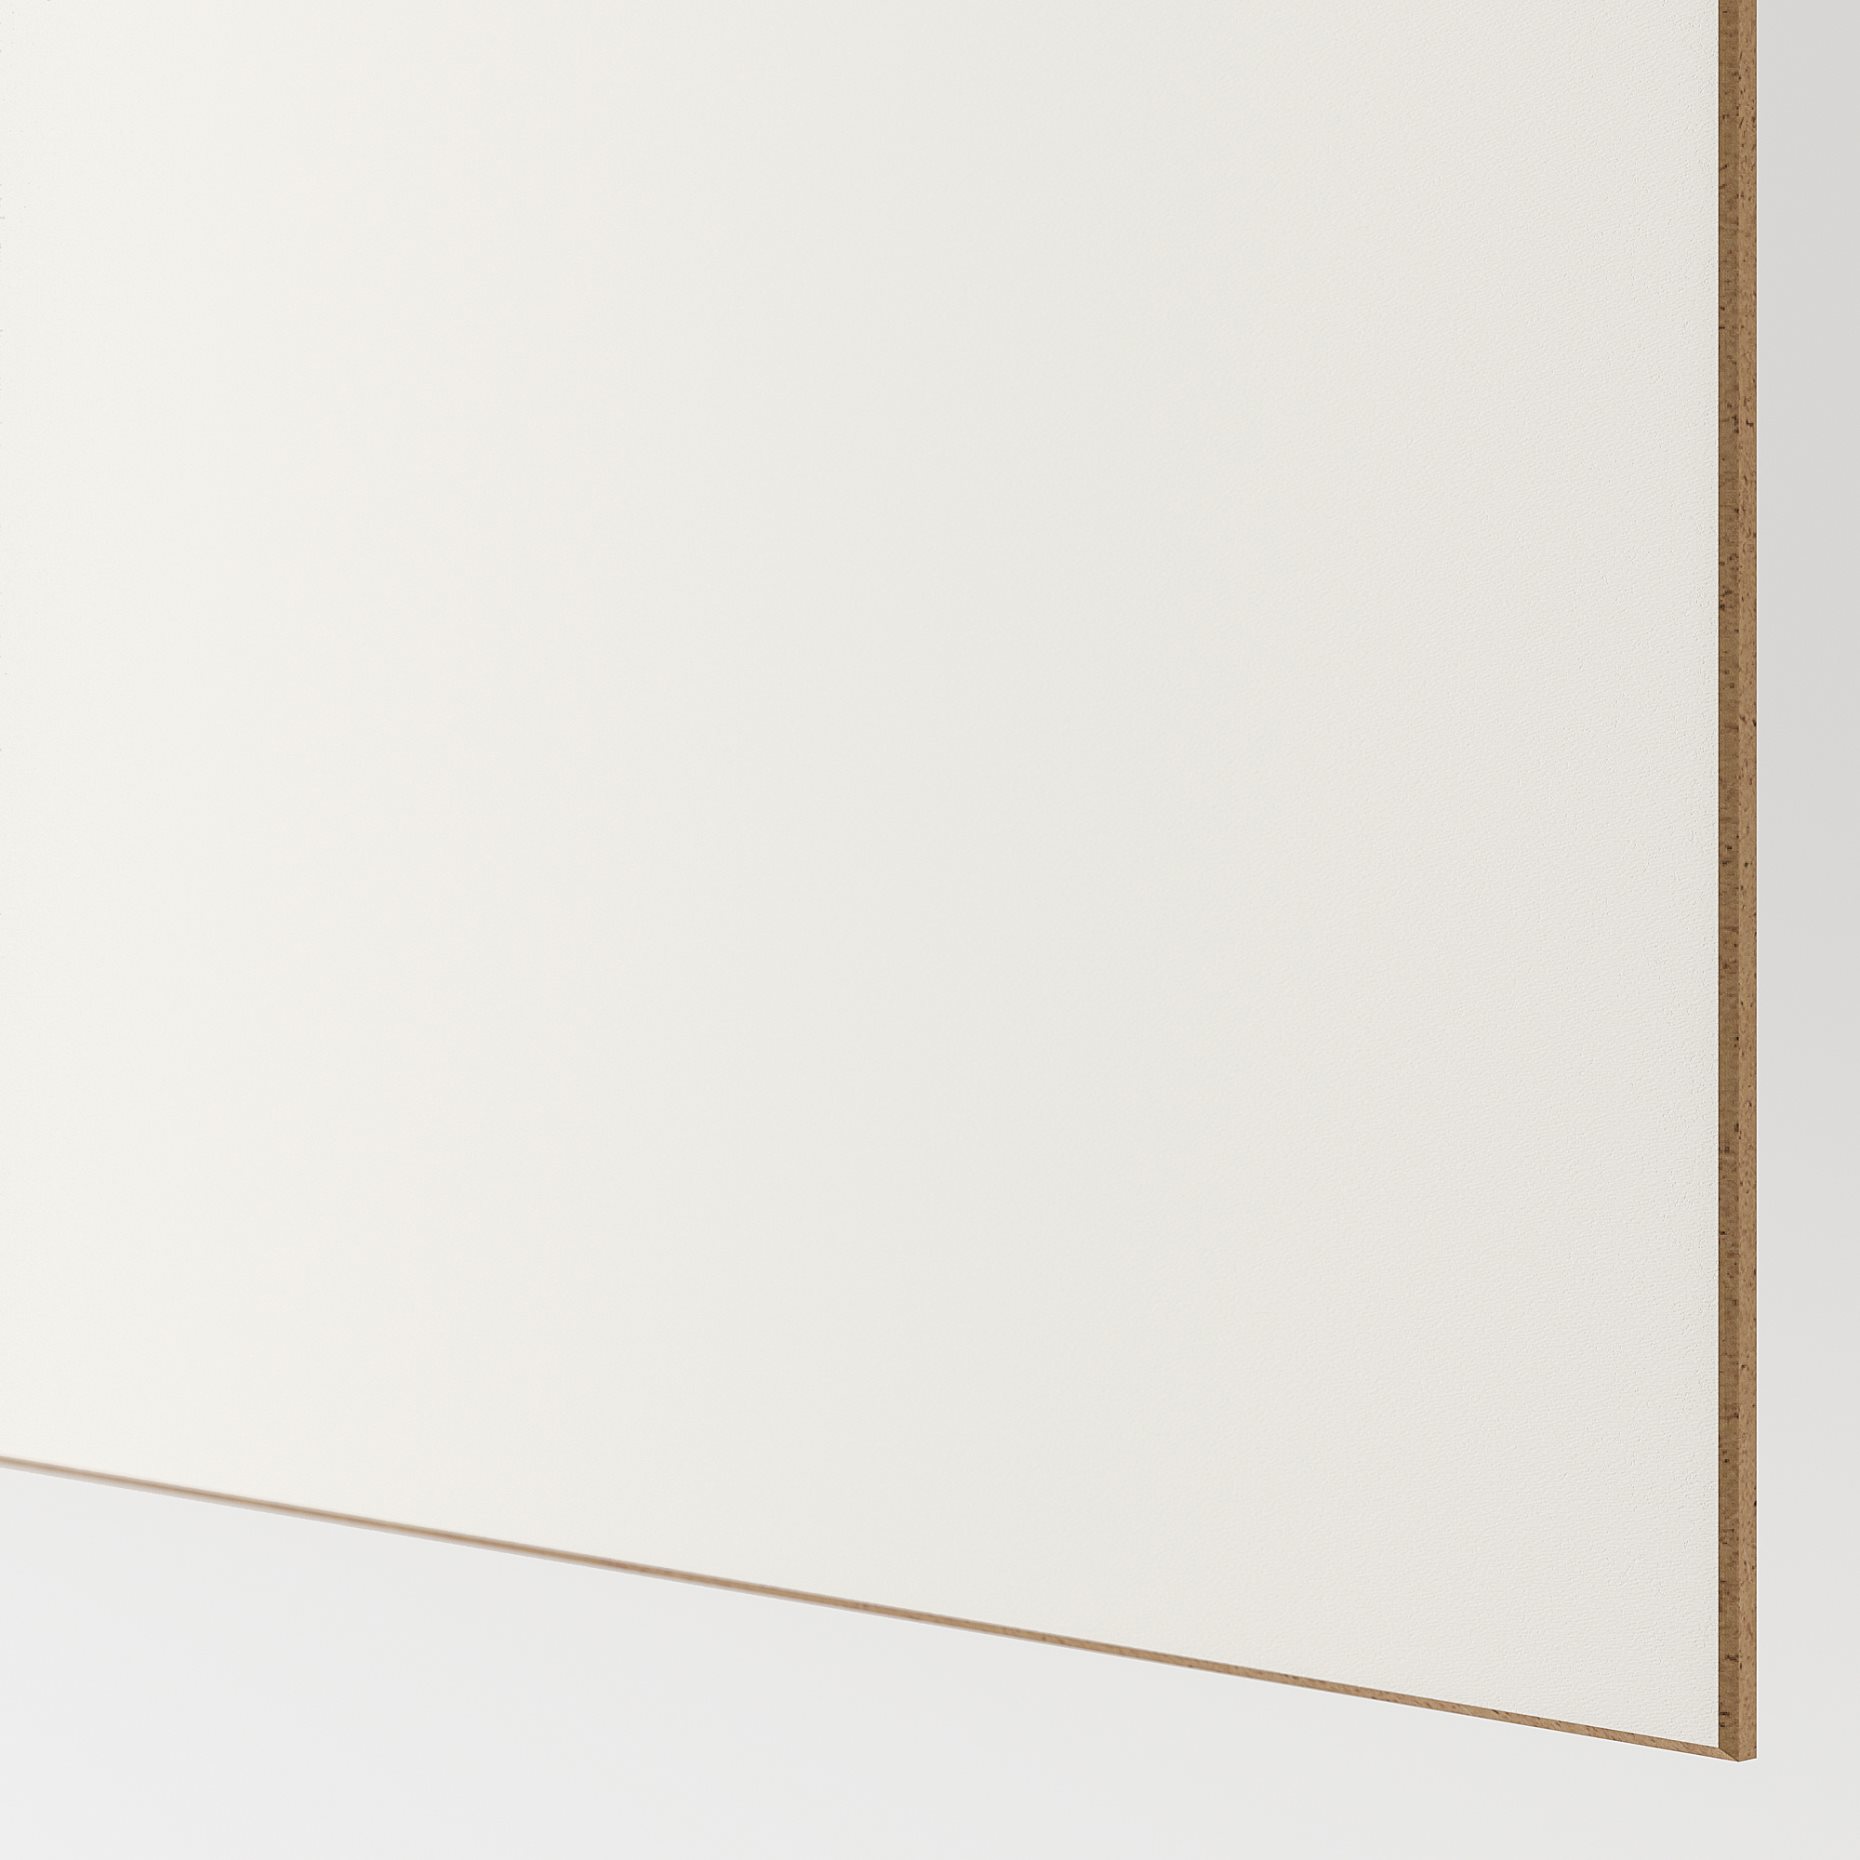 MEHAMN, 4 panels for sliding door frame, 75x201 cm, 904.211.95